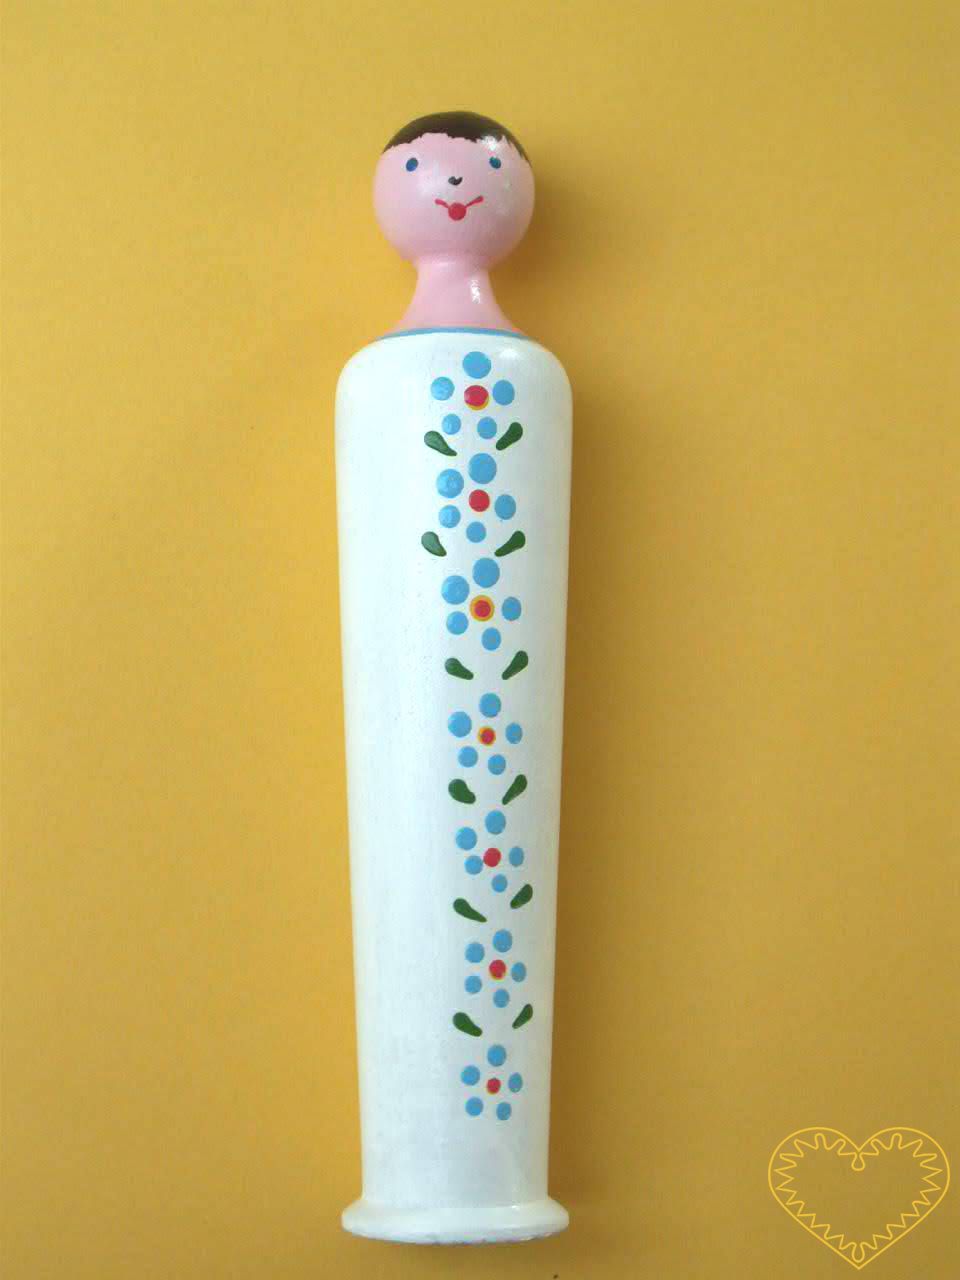 Malované dřevěné miminko. Krásně malovaný suvenýr vycházející ze vzorů tradičních dětských dřevěných hraček. Soustružená tvarově jednoduchá panenka má na povijanu jemné kytičkové dekorování.